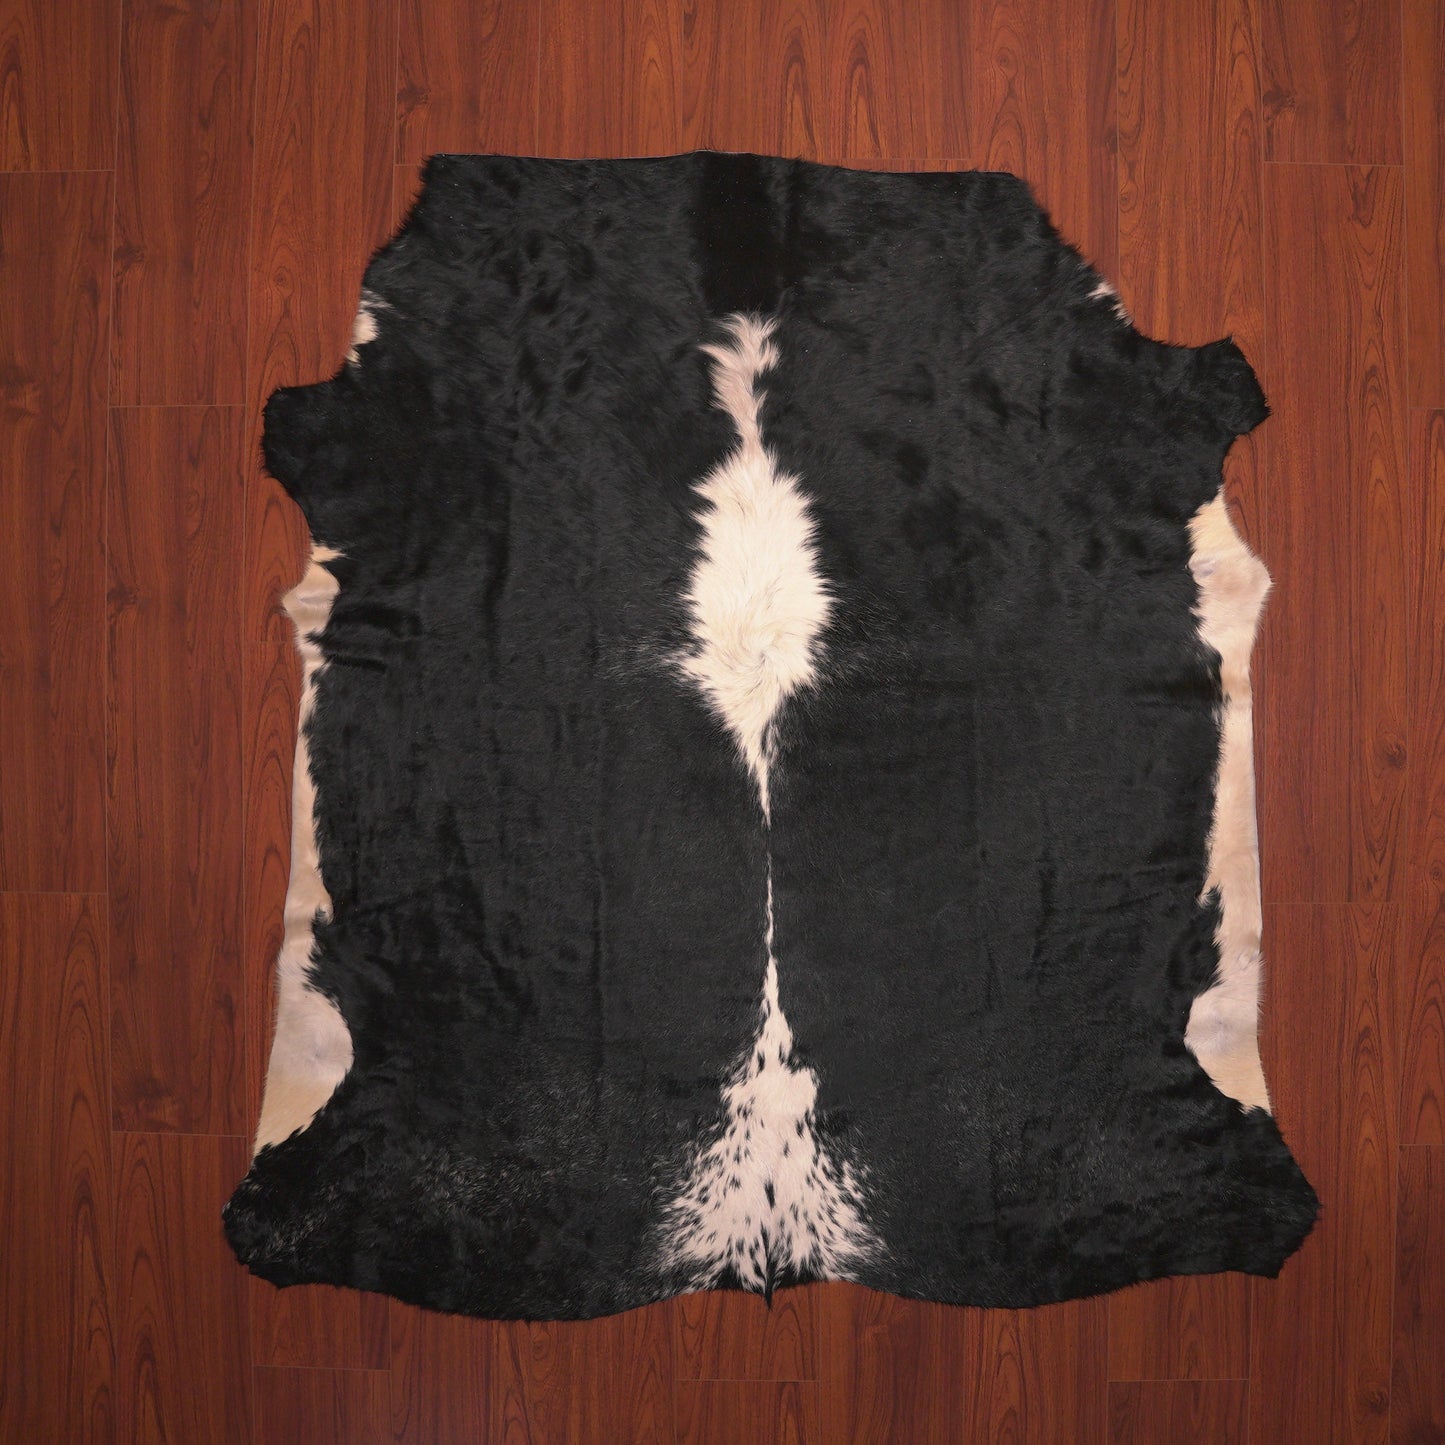 bold black and white nguni cow skin hide rug